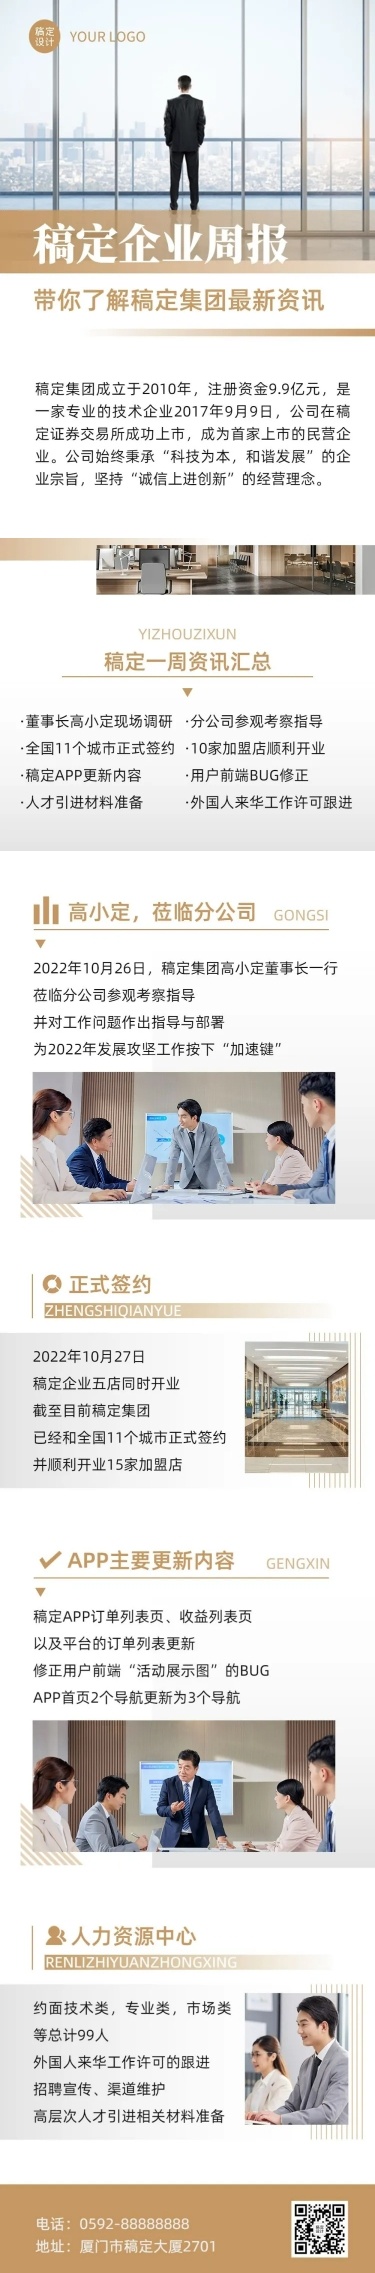 企业商务行业资讯集团周刊周报文章长图